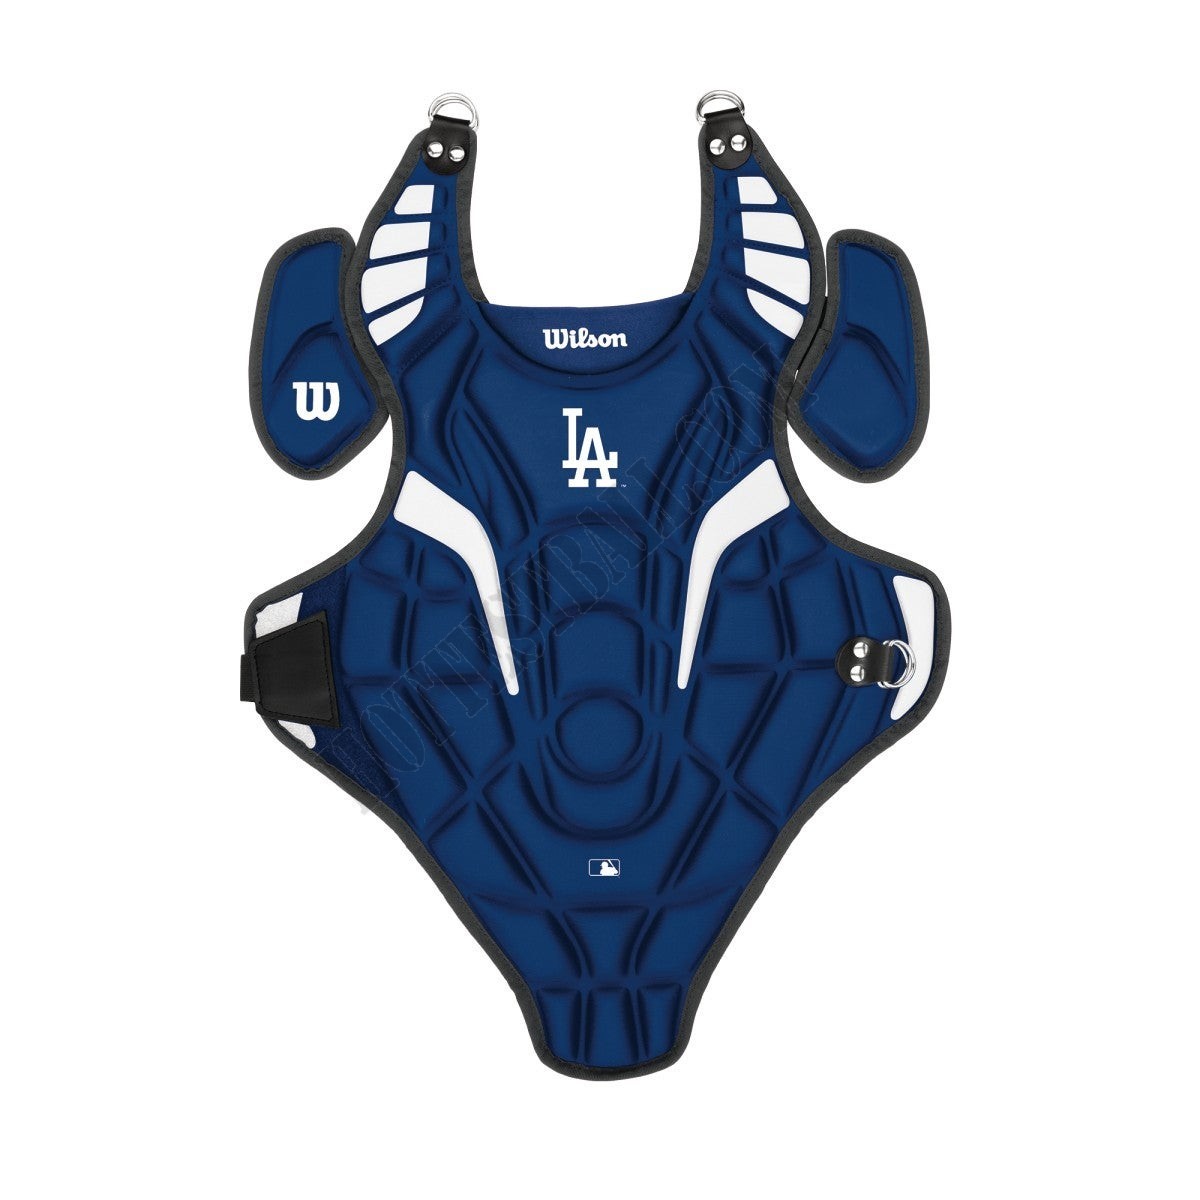 EZ Gear Catcher's Kit - Los Angeles Dodgers - Wilson Discount Store - EZ Gear Catcher's Kit - Los Angeles Dodgers - Wilson Discount Store